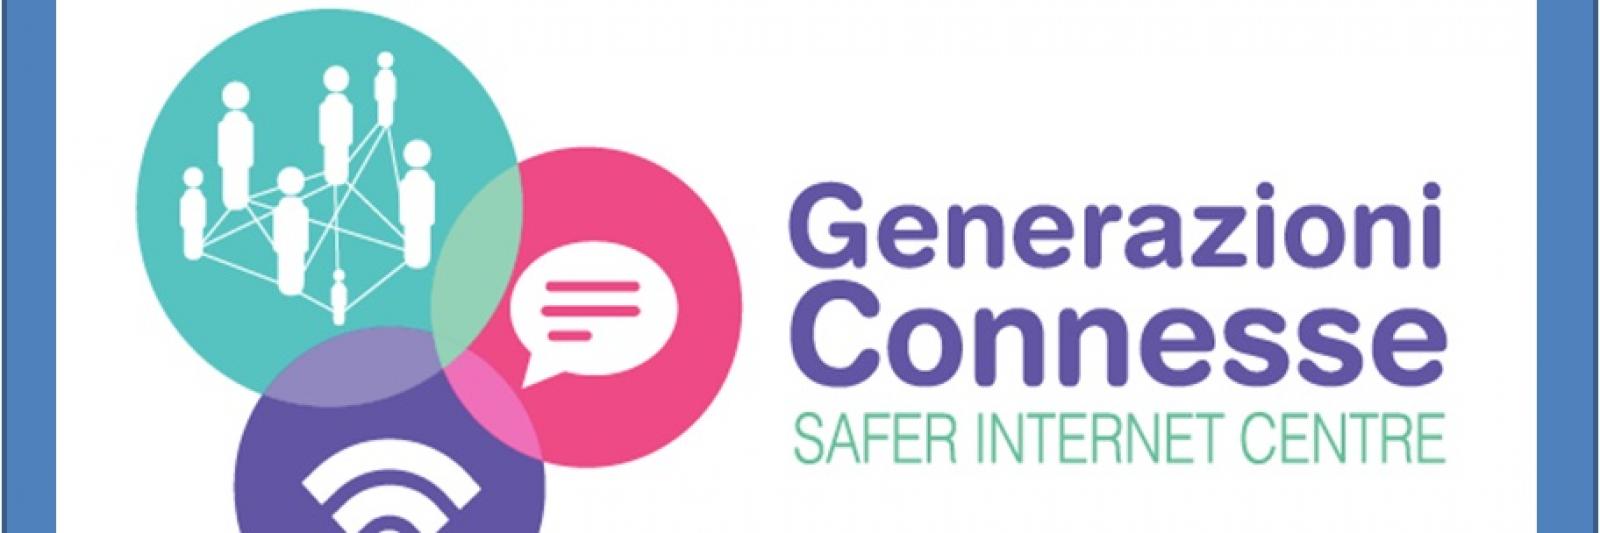 Generazione Connesse - Safer Internet Center (titolo e logo)